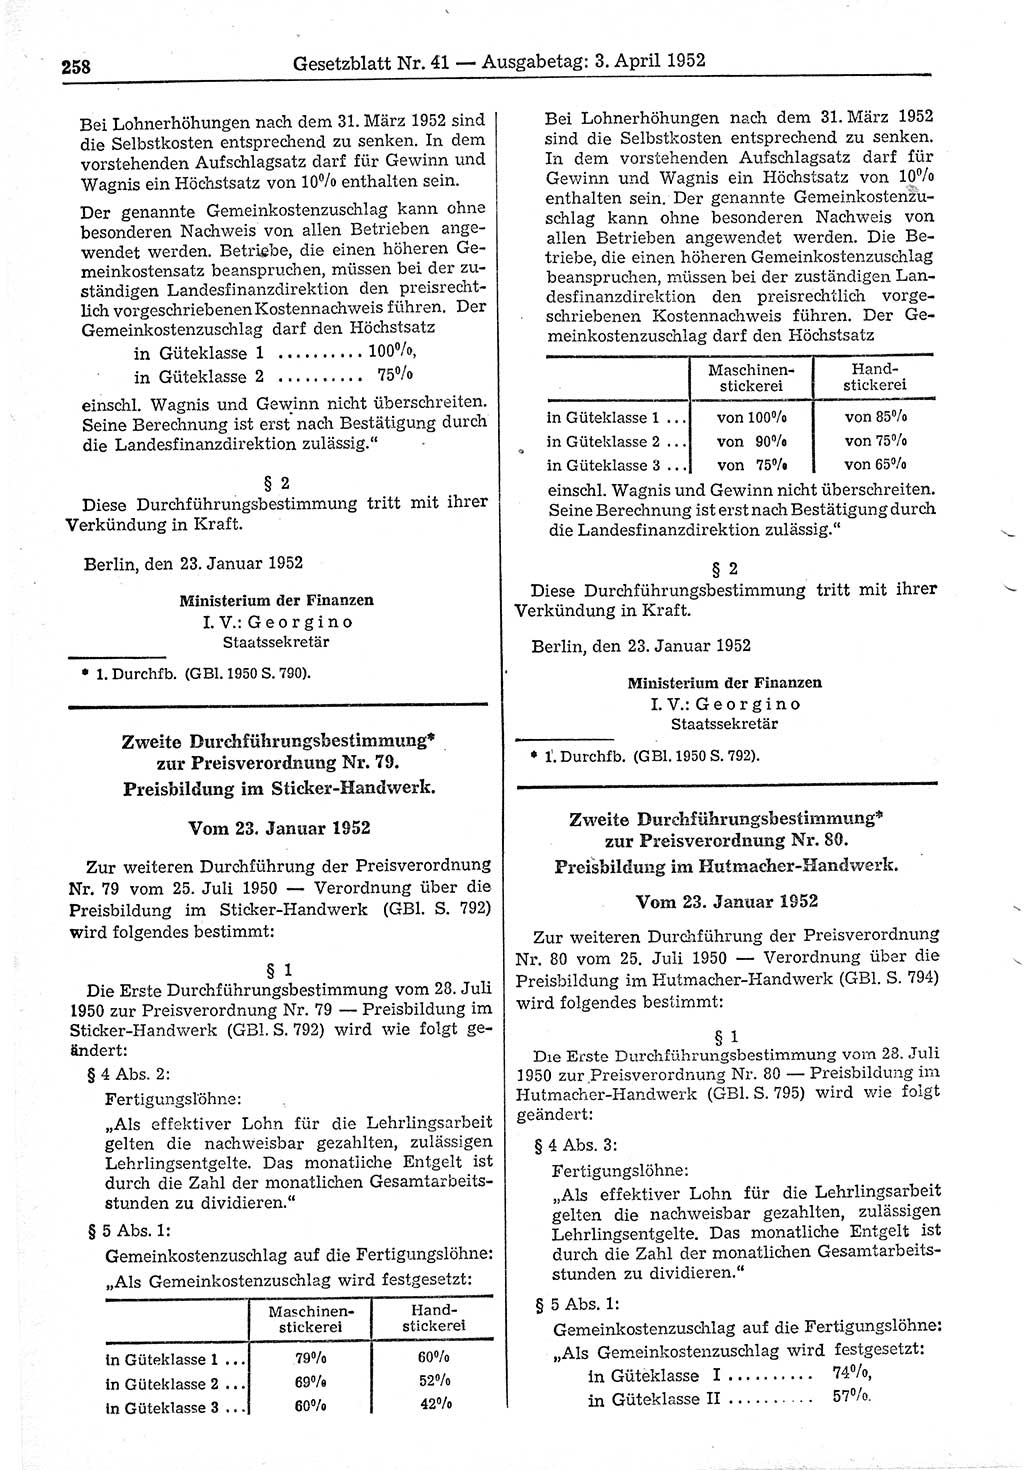 Gesetzblatt (GBl.) der Deutschen Demokratischen Republik (DDR) 1952, Seite 258 (GBl. DDR 1952, S. 258)